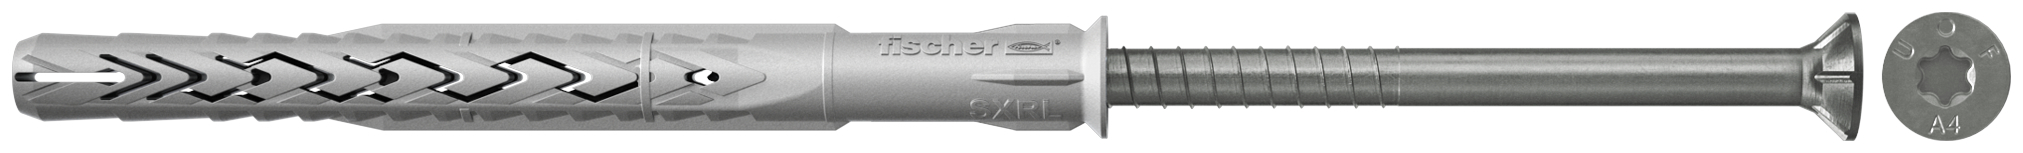 fischer Tasselli prolungati SXRL 8x160 T A4 (1 Pz.) Tassello prolungato in nylon con marcatura CE con vite premontata in acciaio inox A4, T.S.P. impronta torx fie3168